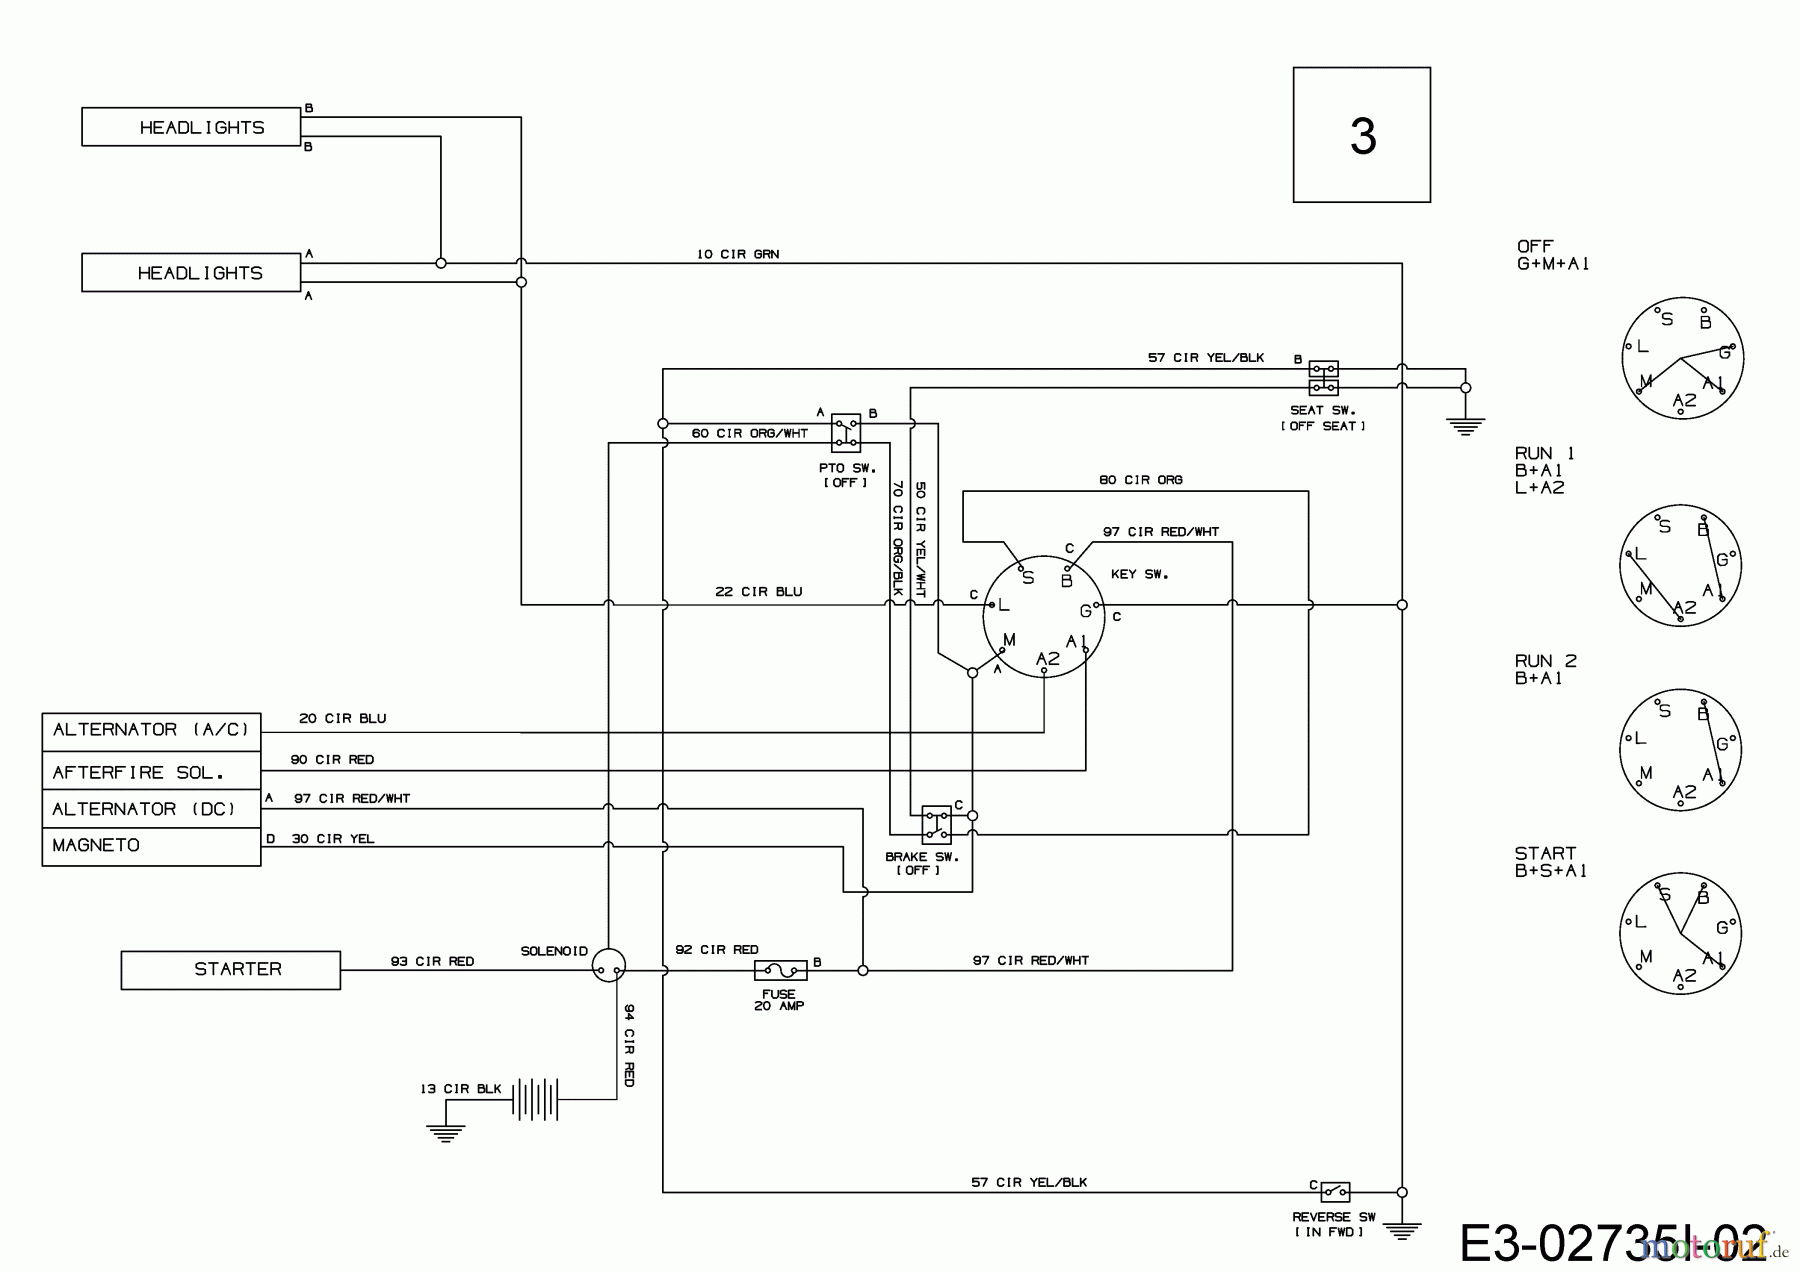  Tigara Lawn tractors TG 22/107 HBI 13IT79KG649  (2020) Wiring diagram